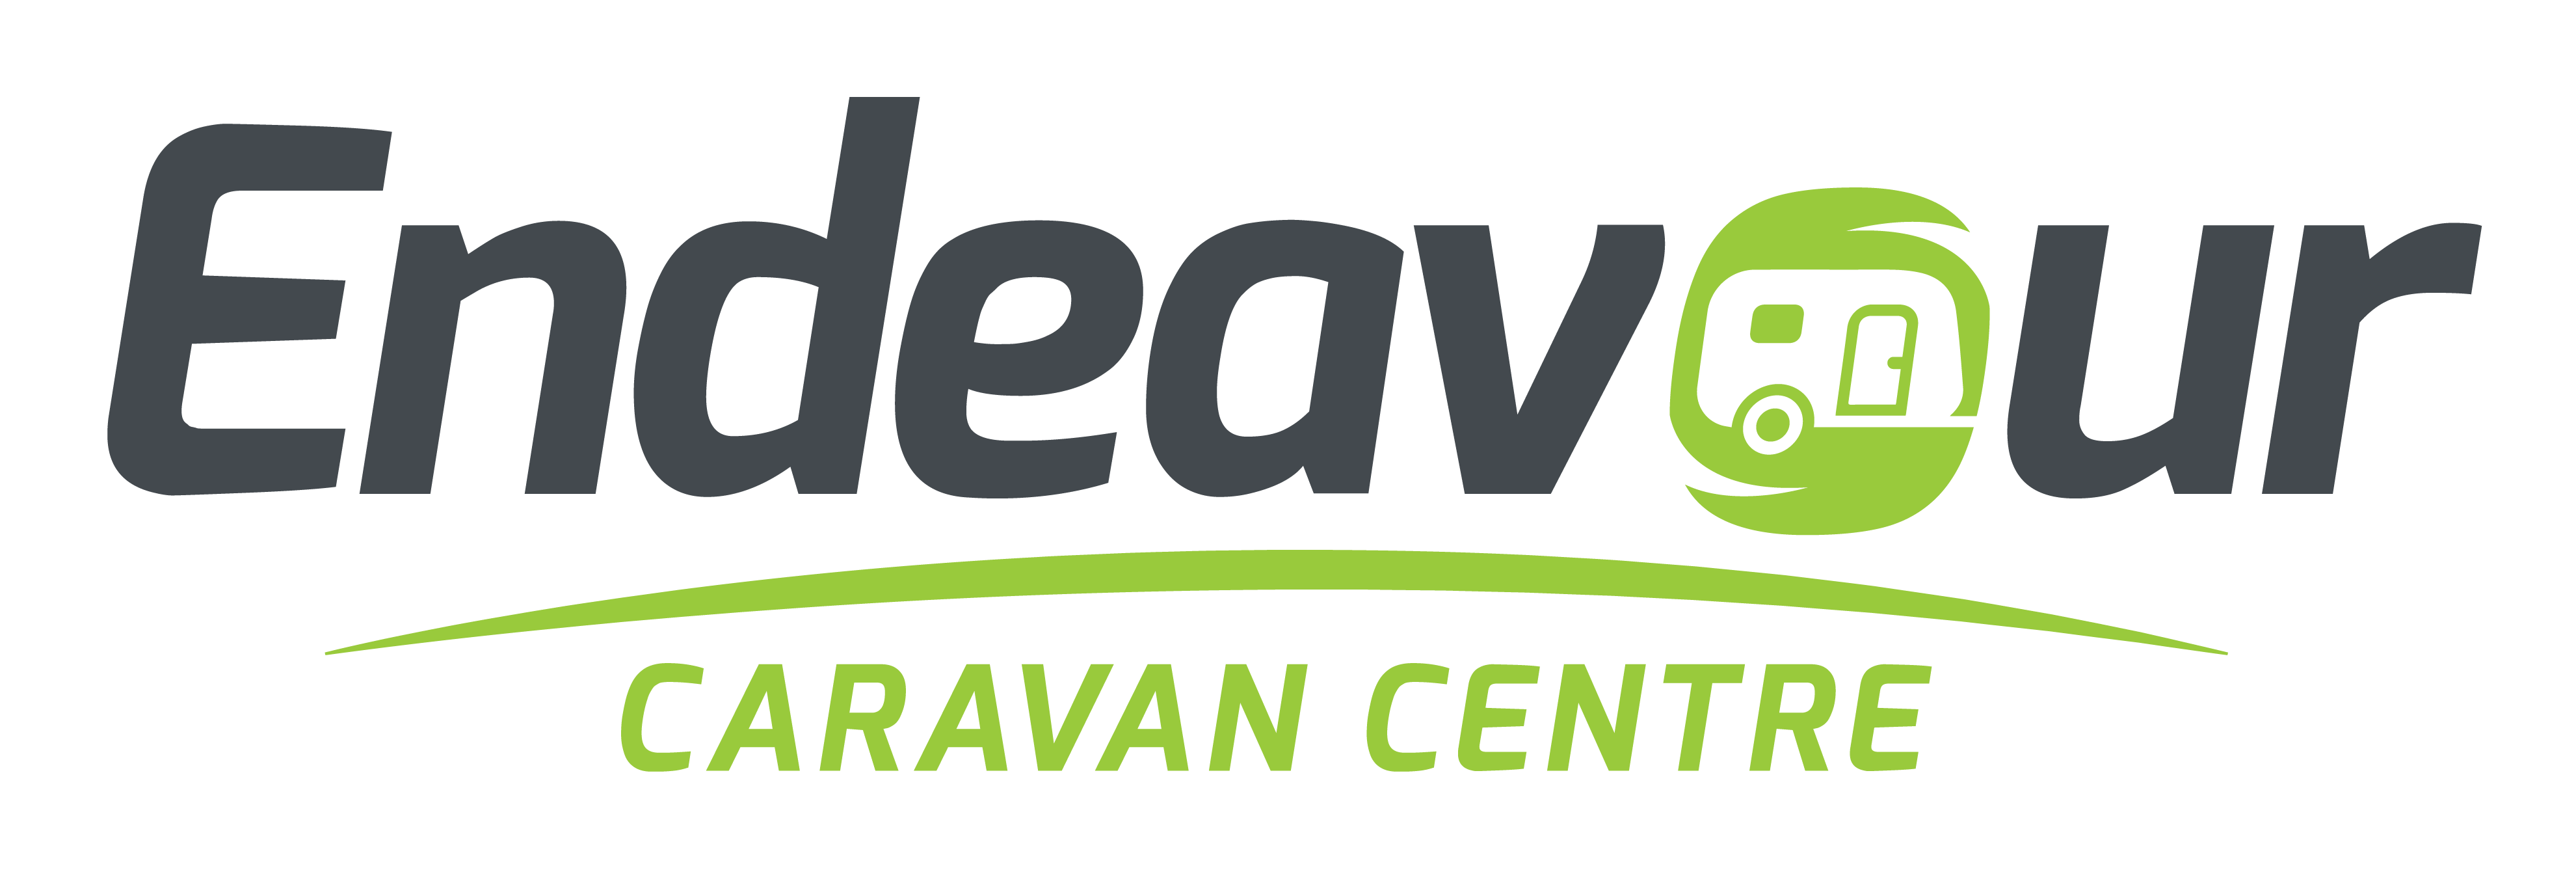 Endeavour Caravan Centre